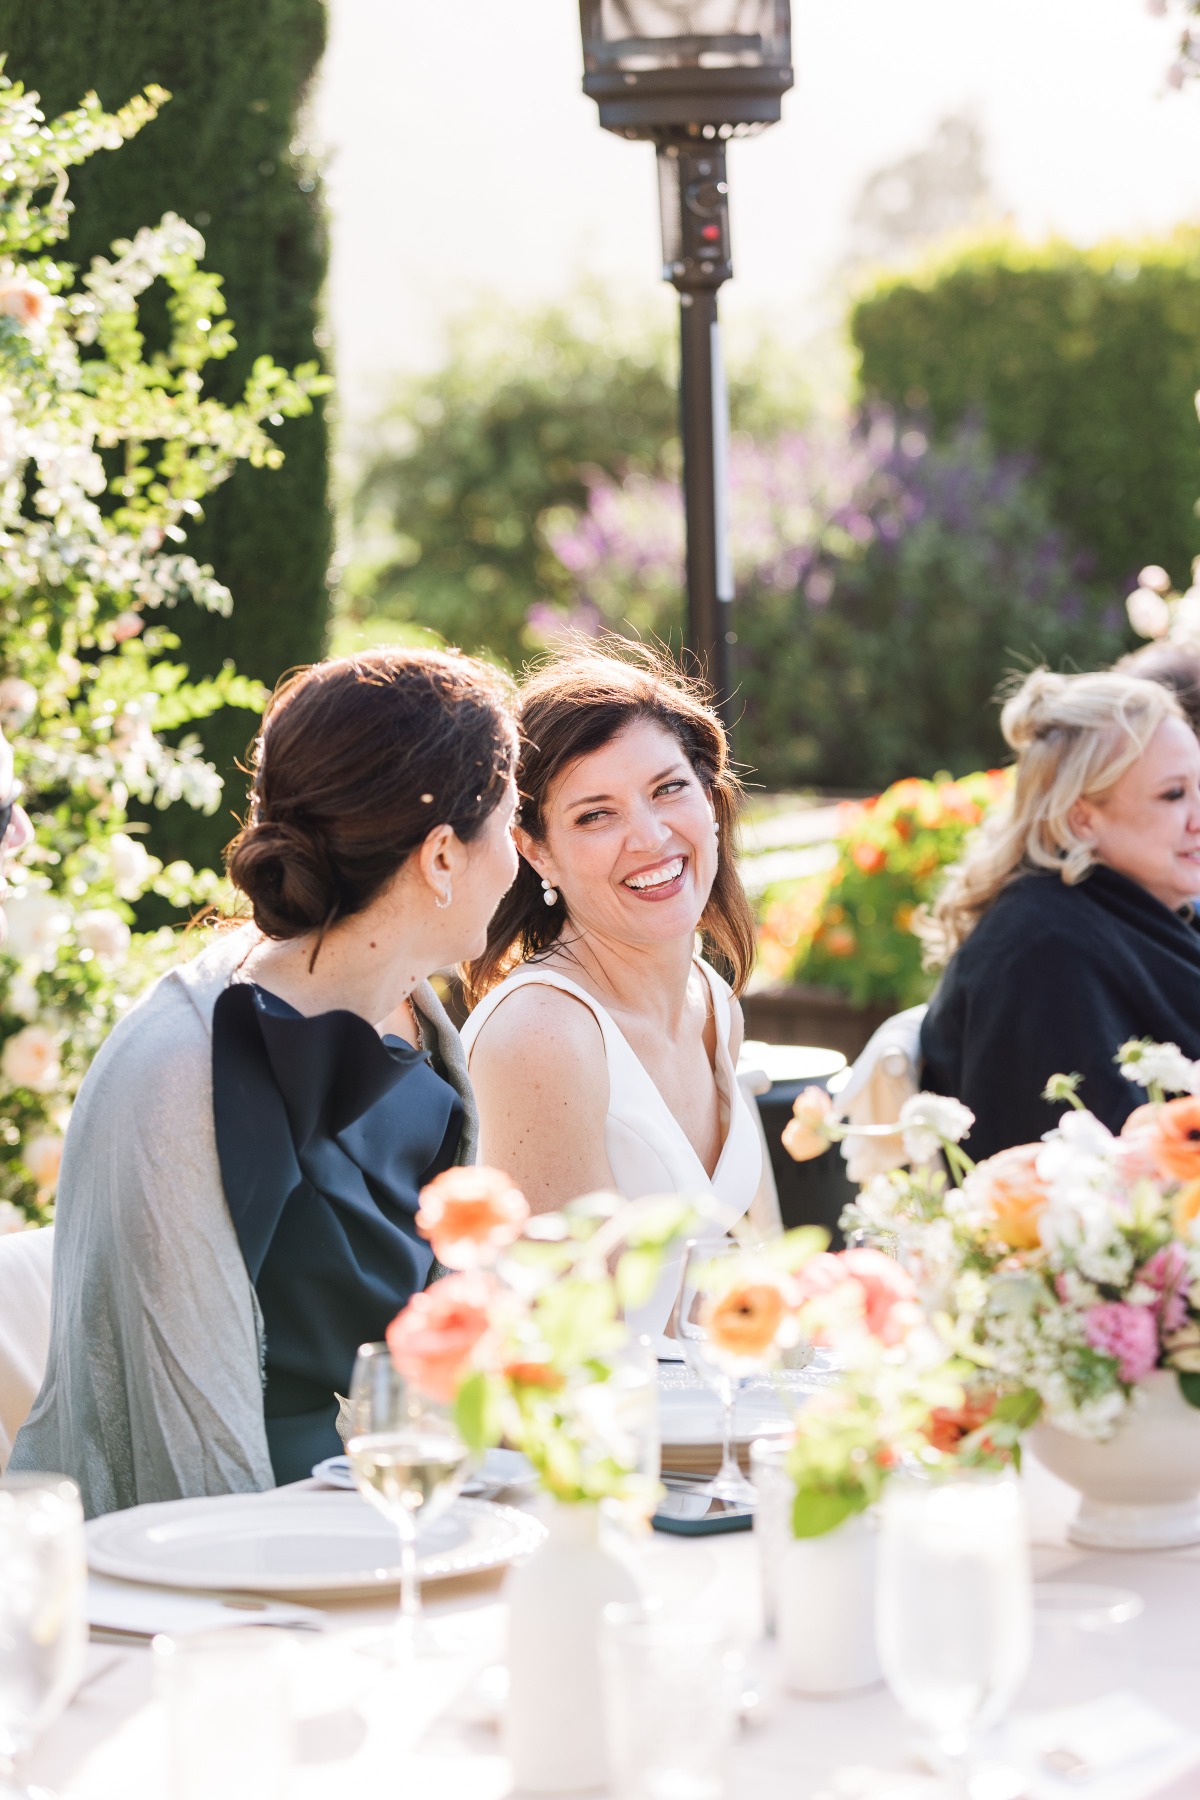 Joyful bride at vibrant garden reception in Carmel Valley